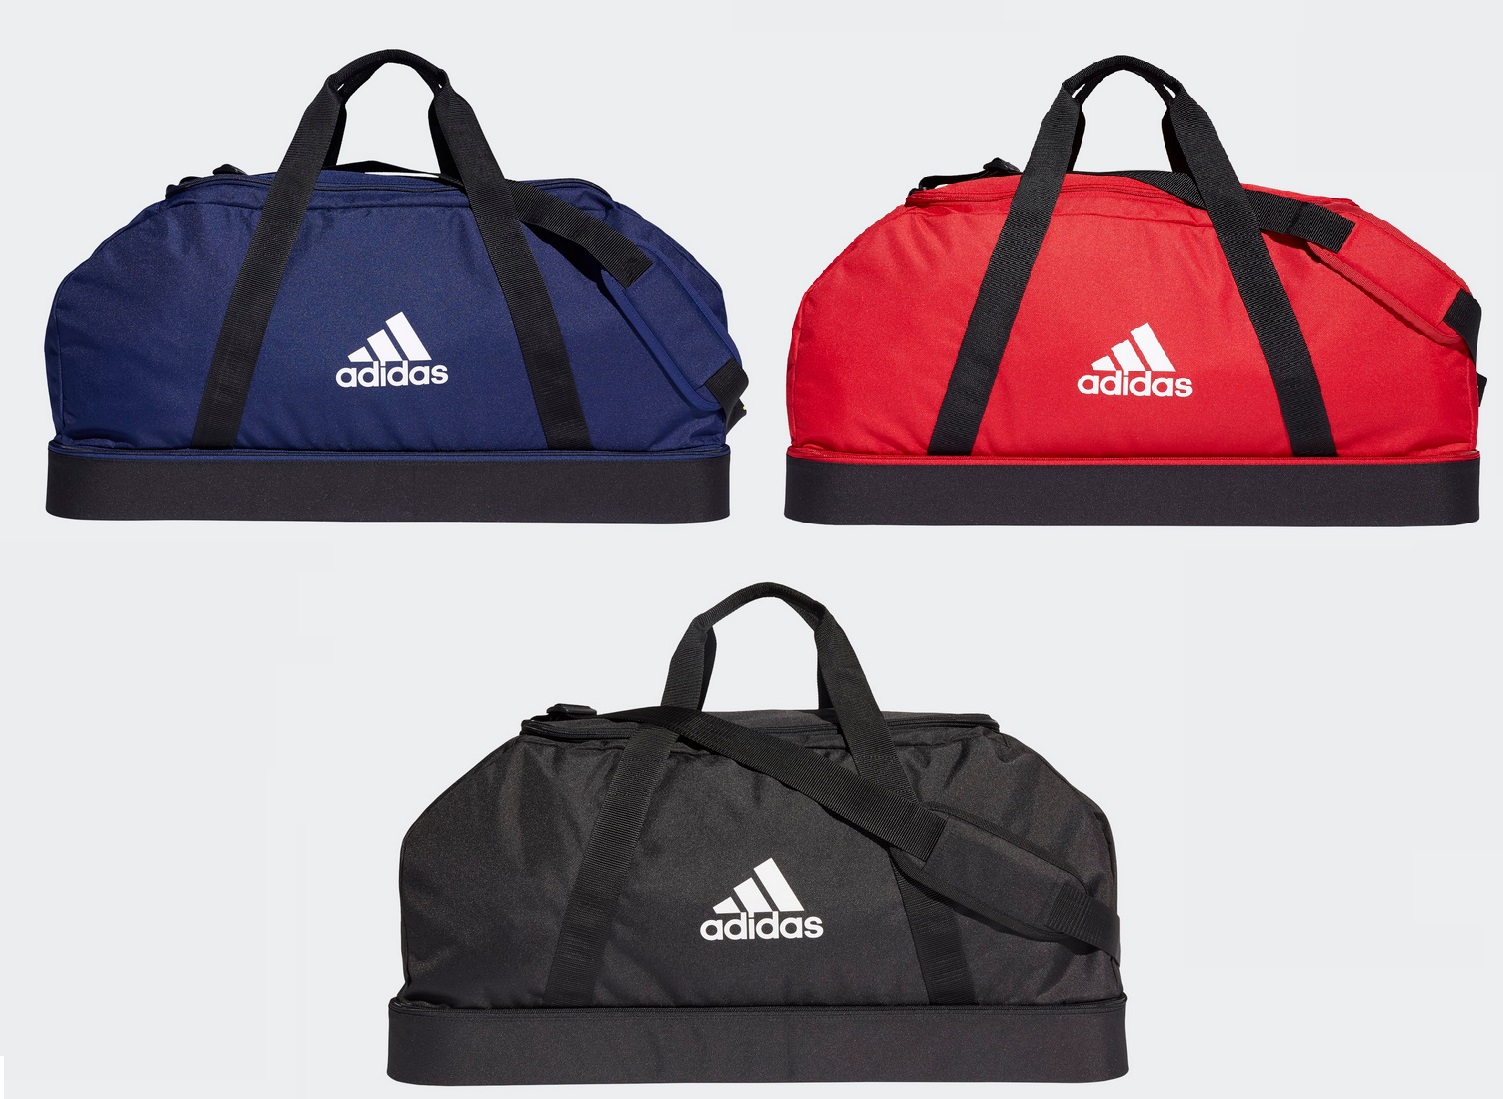 adidas Sporttaschen mit Bodenfach Gr. L rot